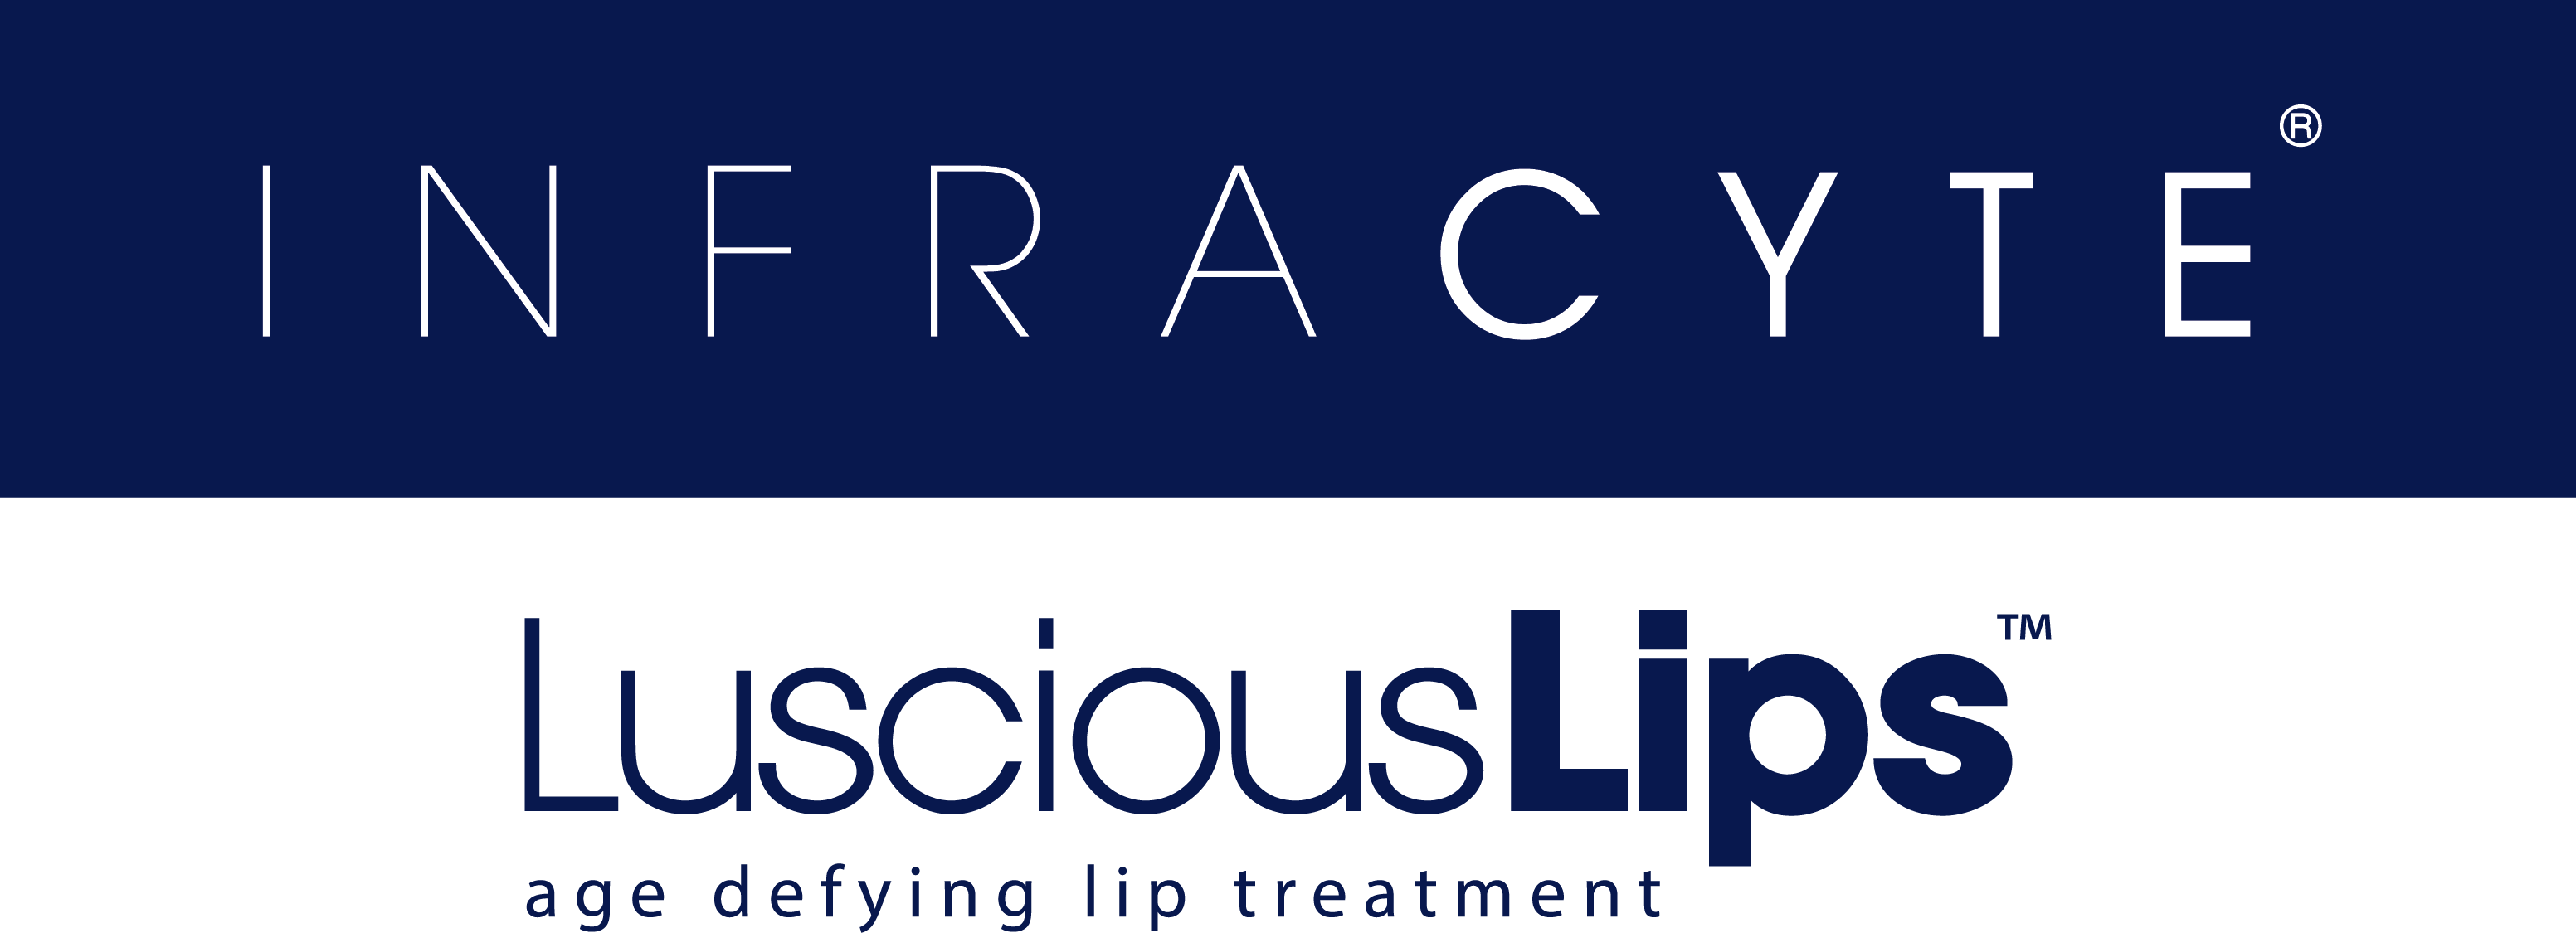 LusciousLips® das Smart-Aging Lipgloss mit Inhaltsstoffen. Ideal für die Lippenpflege und auch unmittelbar nach der Applikation von Hyaluronsäure Fillern.